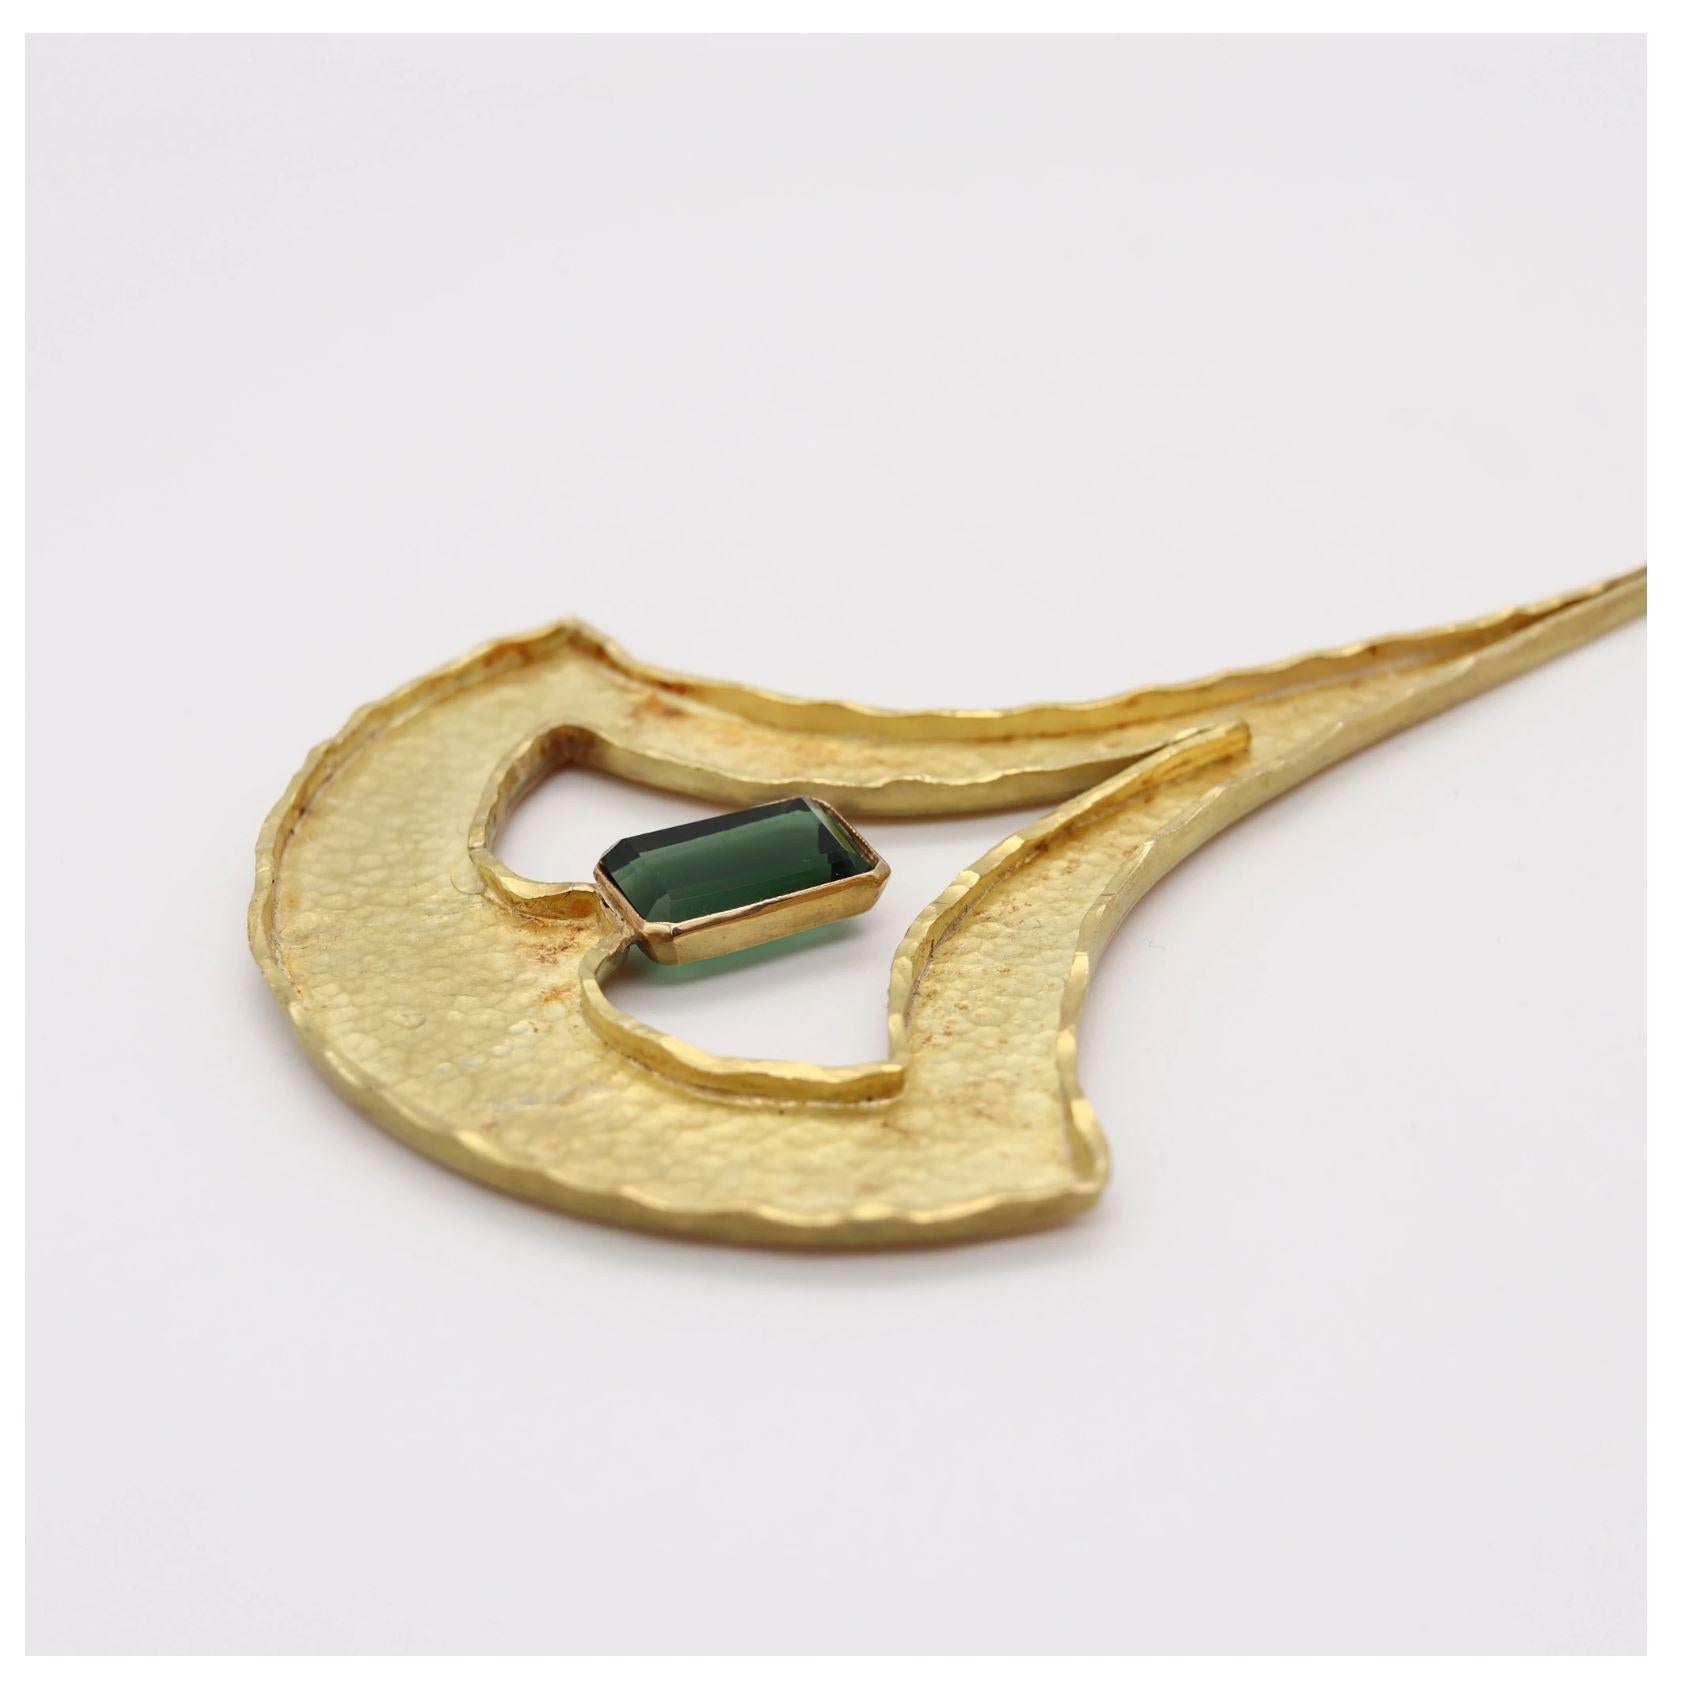 Guayasamin Modernist Geometric Sculptural Necklace 18Kt Gold & Green Tourmaline 1